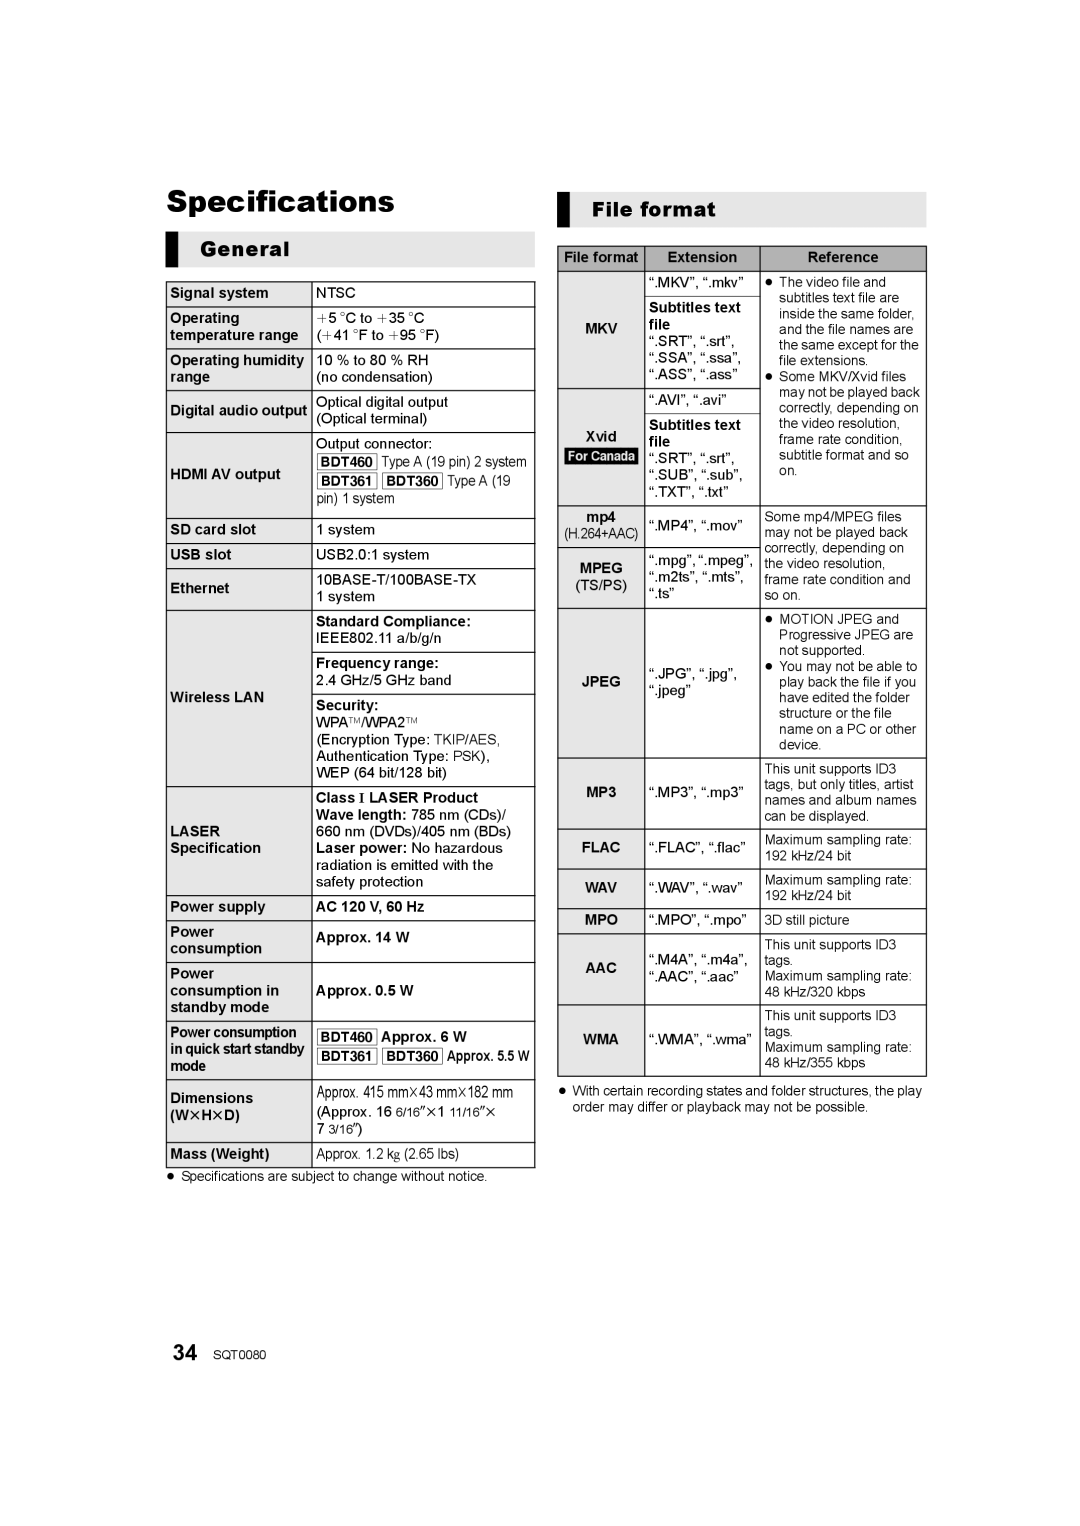 Panasonic DMP-BDT460, DMP-BDT361, DMP-BDT360 owner manual Specifications, General, File format 